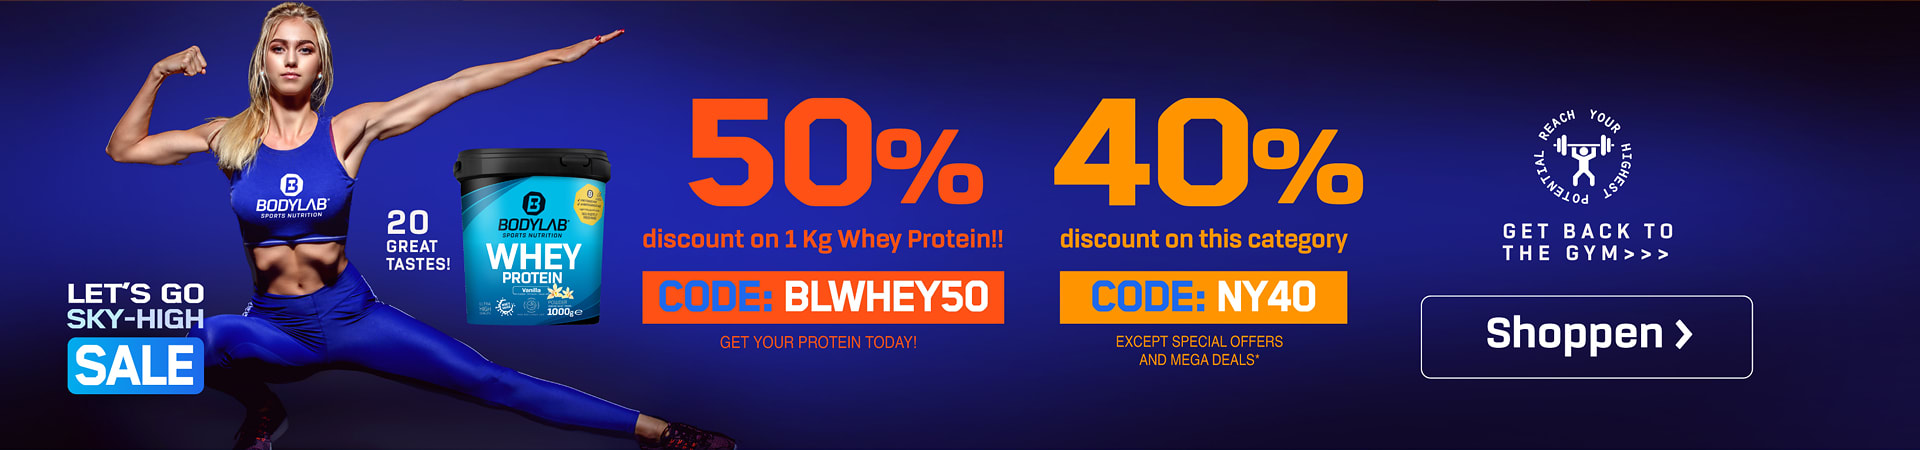 blaues Banner mit Athletin, einer Whey Dose und dem Verweis auf die beiden Angebote mit 50% auf Whey und bis 40% auf Bodylab Produkte